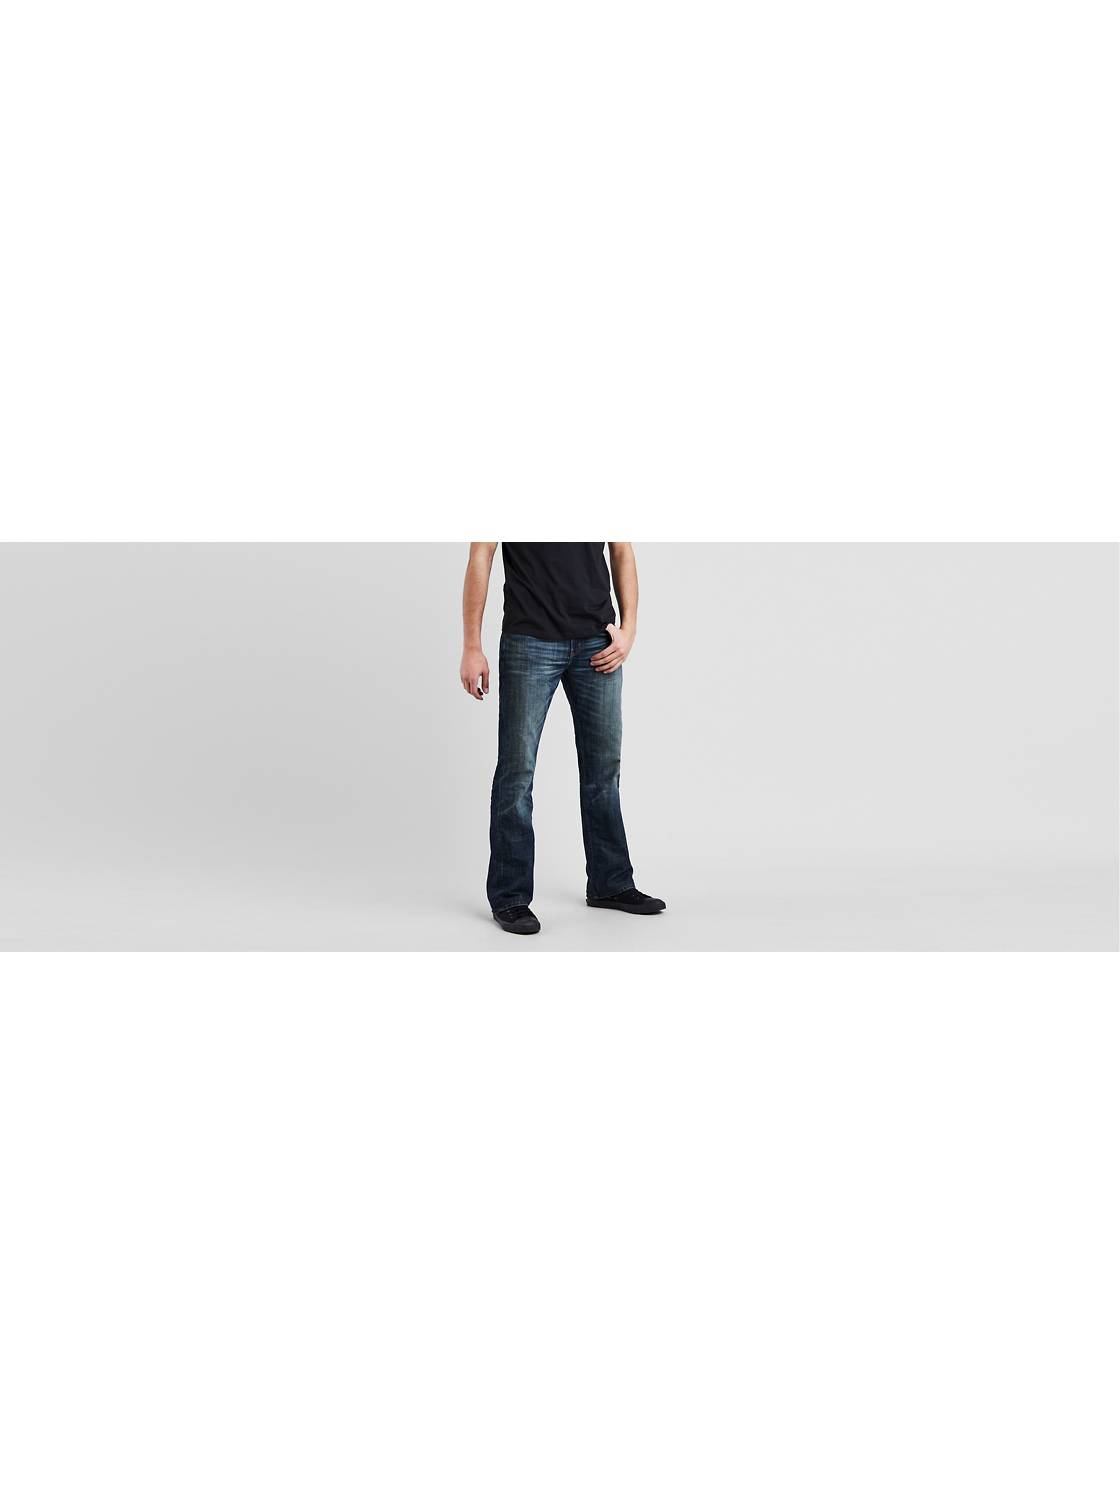 Levi's® 527 - Shop Slim Boot Cut Jeans for Men | Levi’s® US